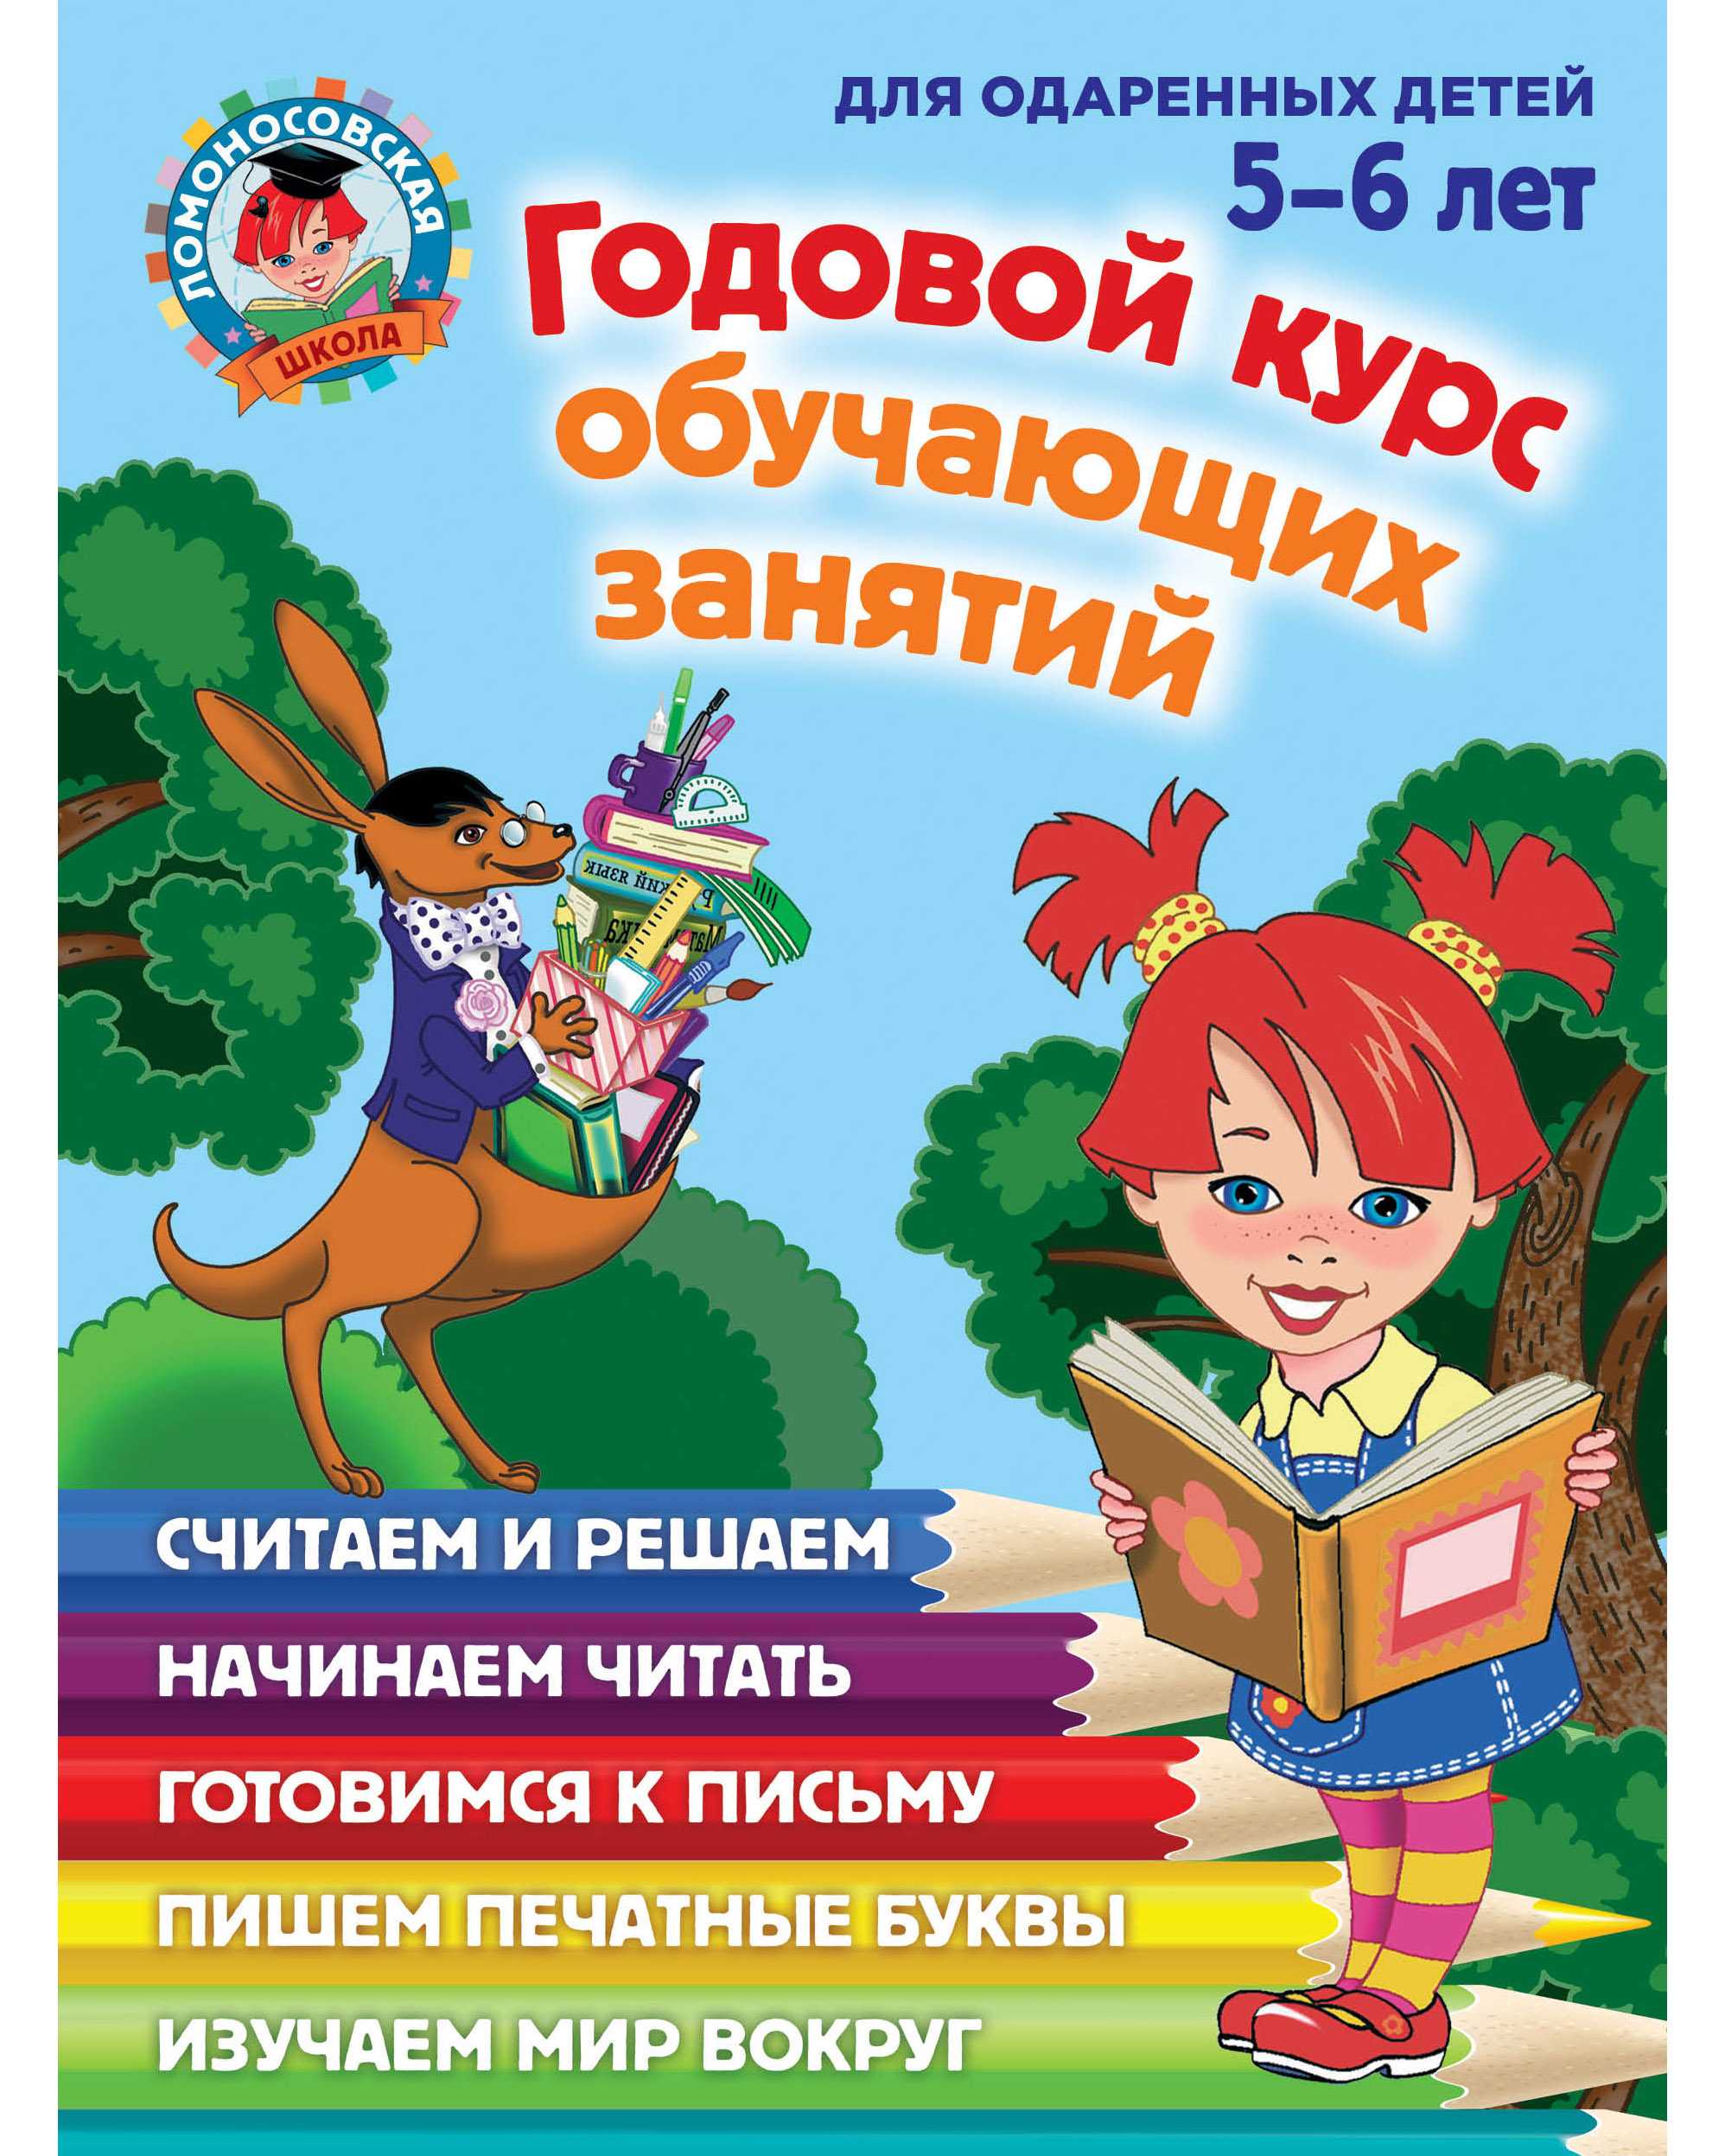 Список книг о развитии дошкольников